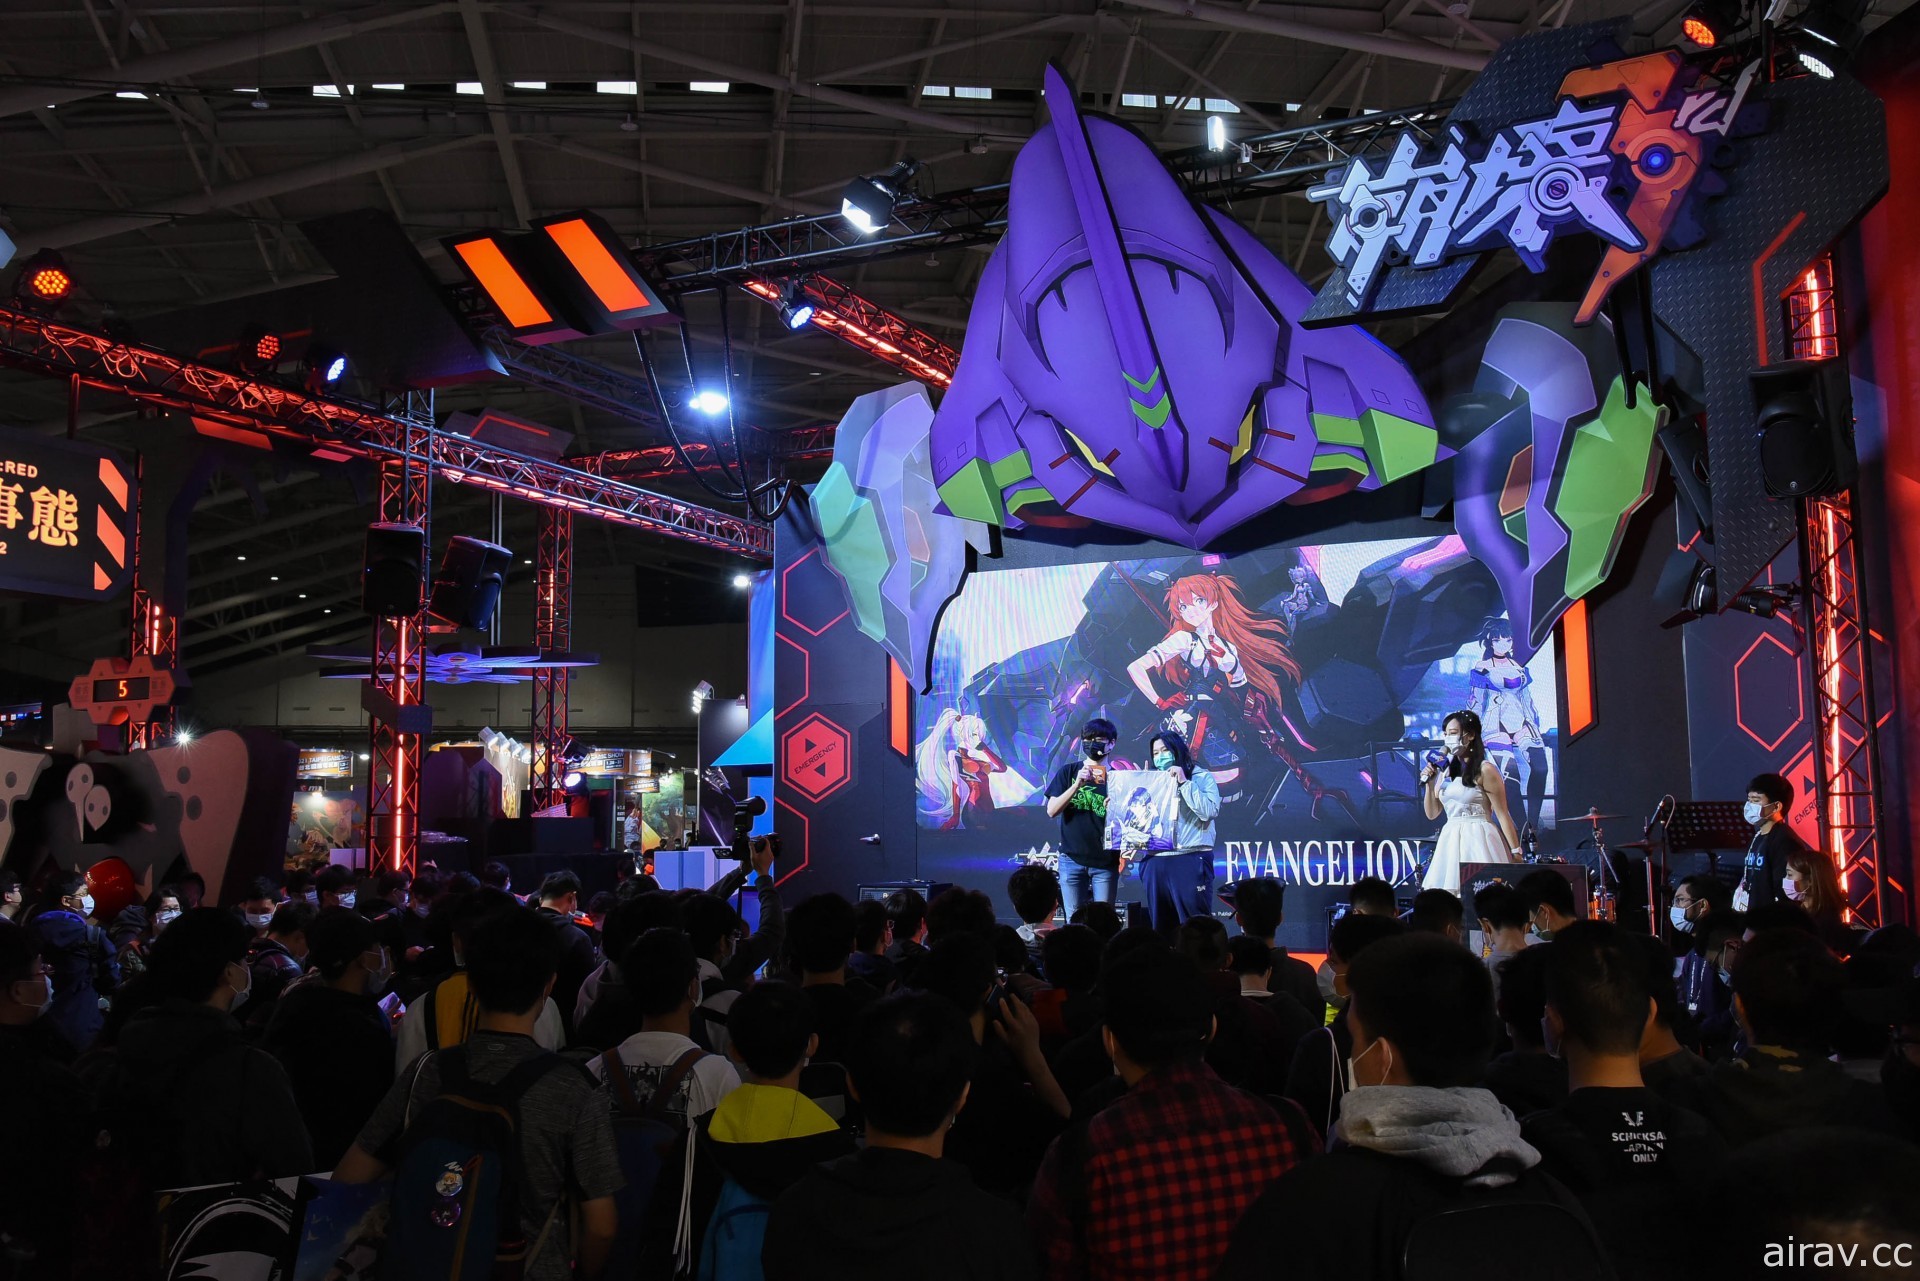 【TpGS 21】台北電玩展首日玩家廠商齊抗疫 《符文大地傳說》《灌籃高手》賽事明登場